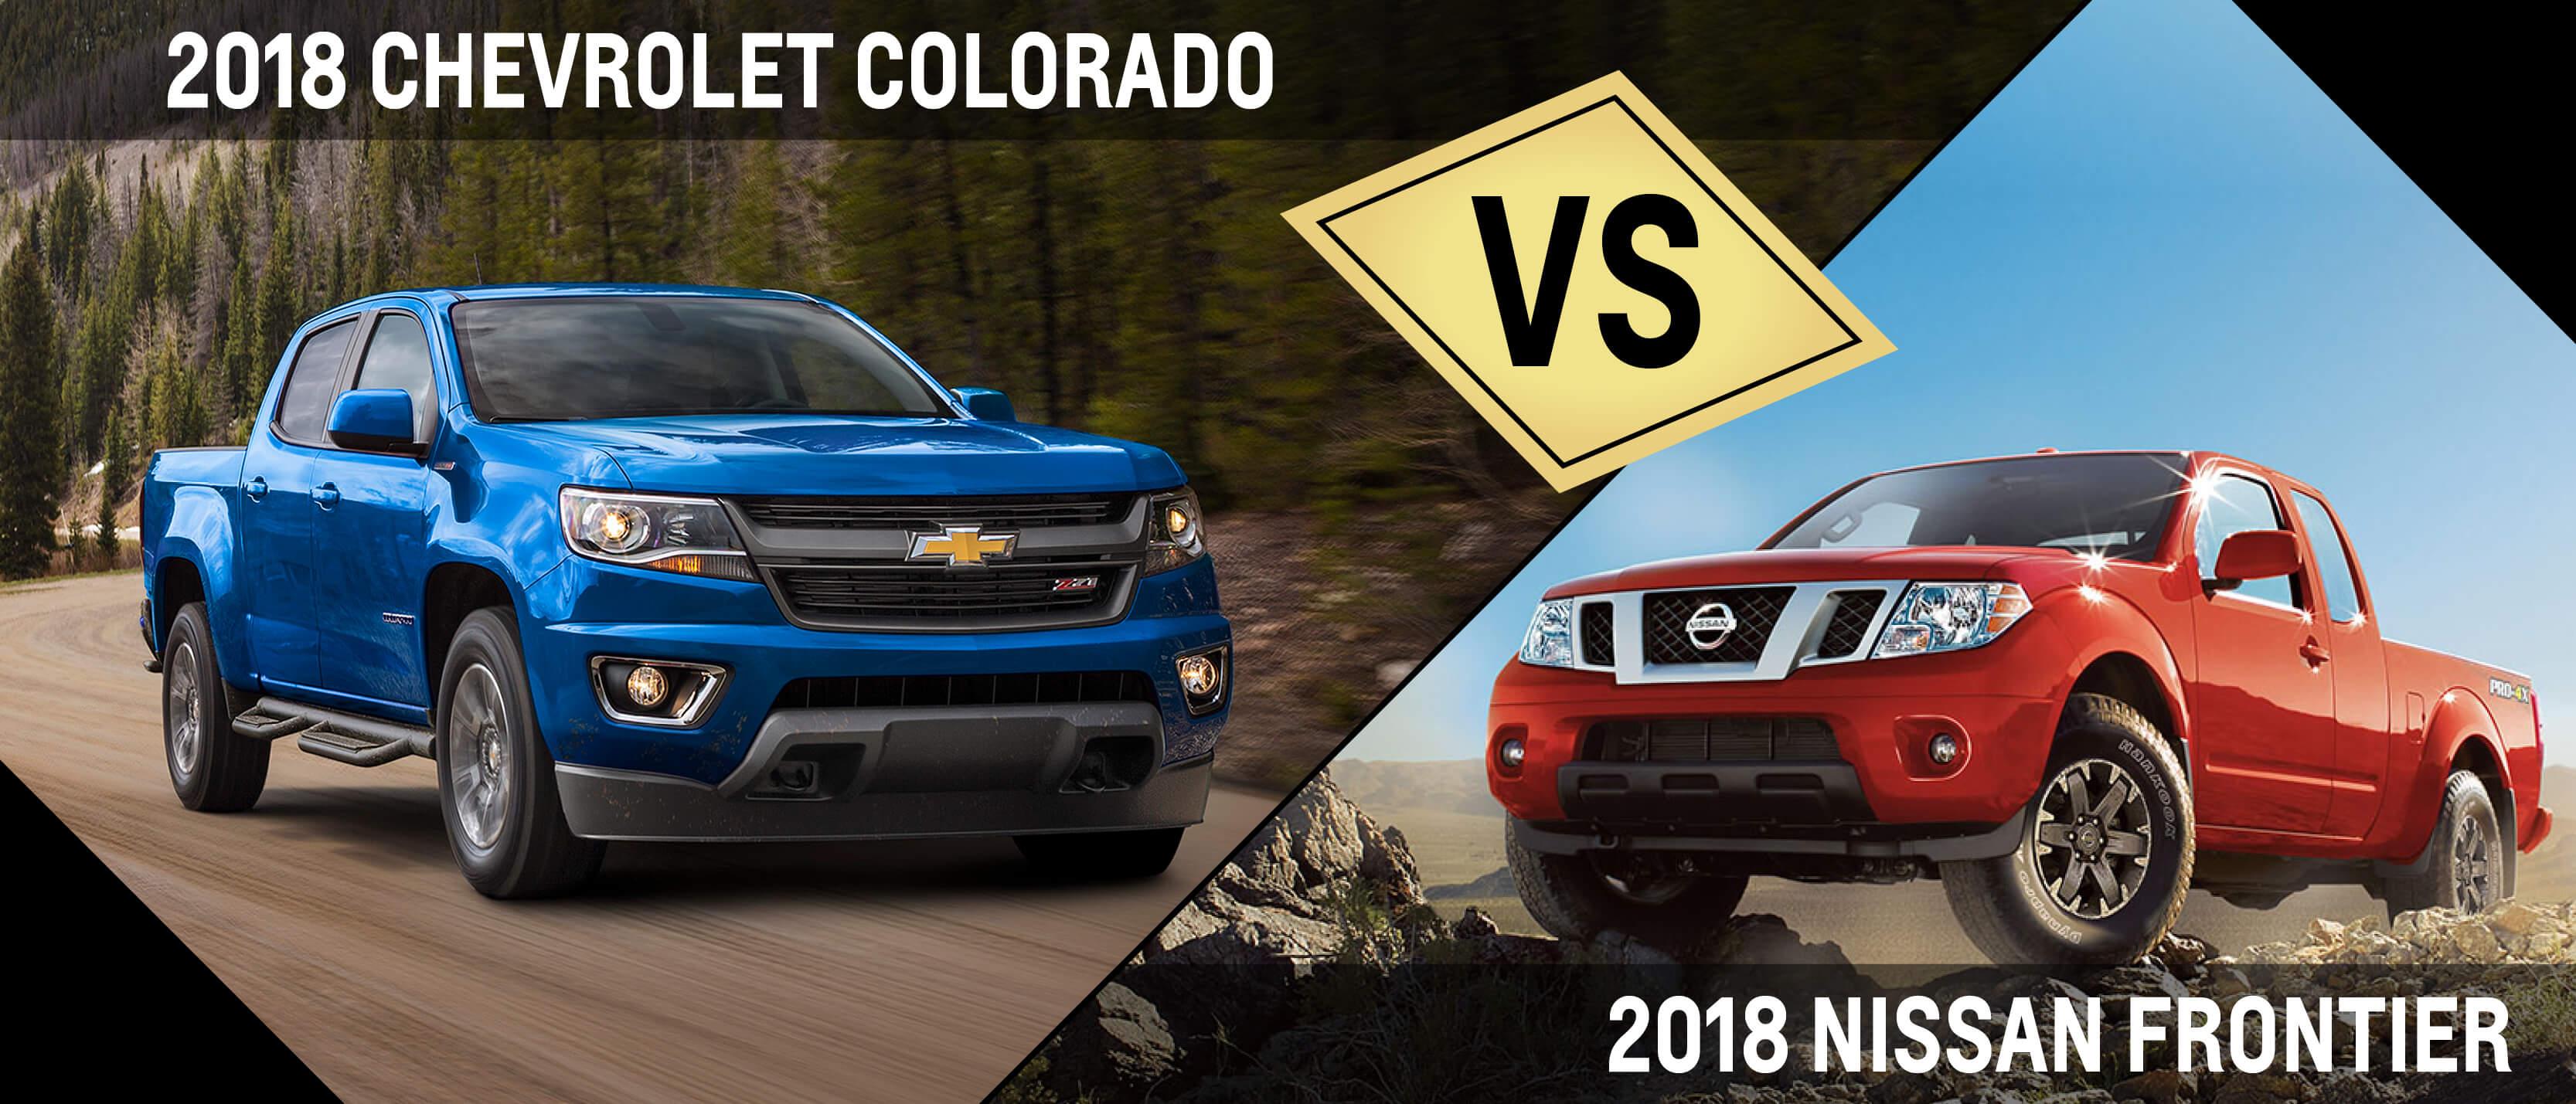 2018 Chevrolet Colorado VS 2018 Nissan Frontier